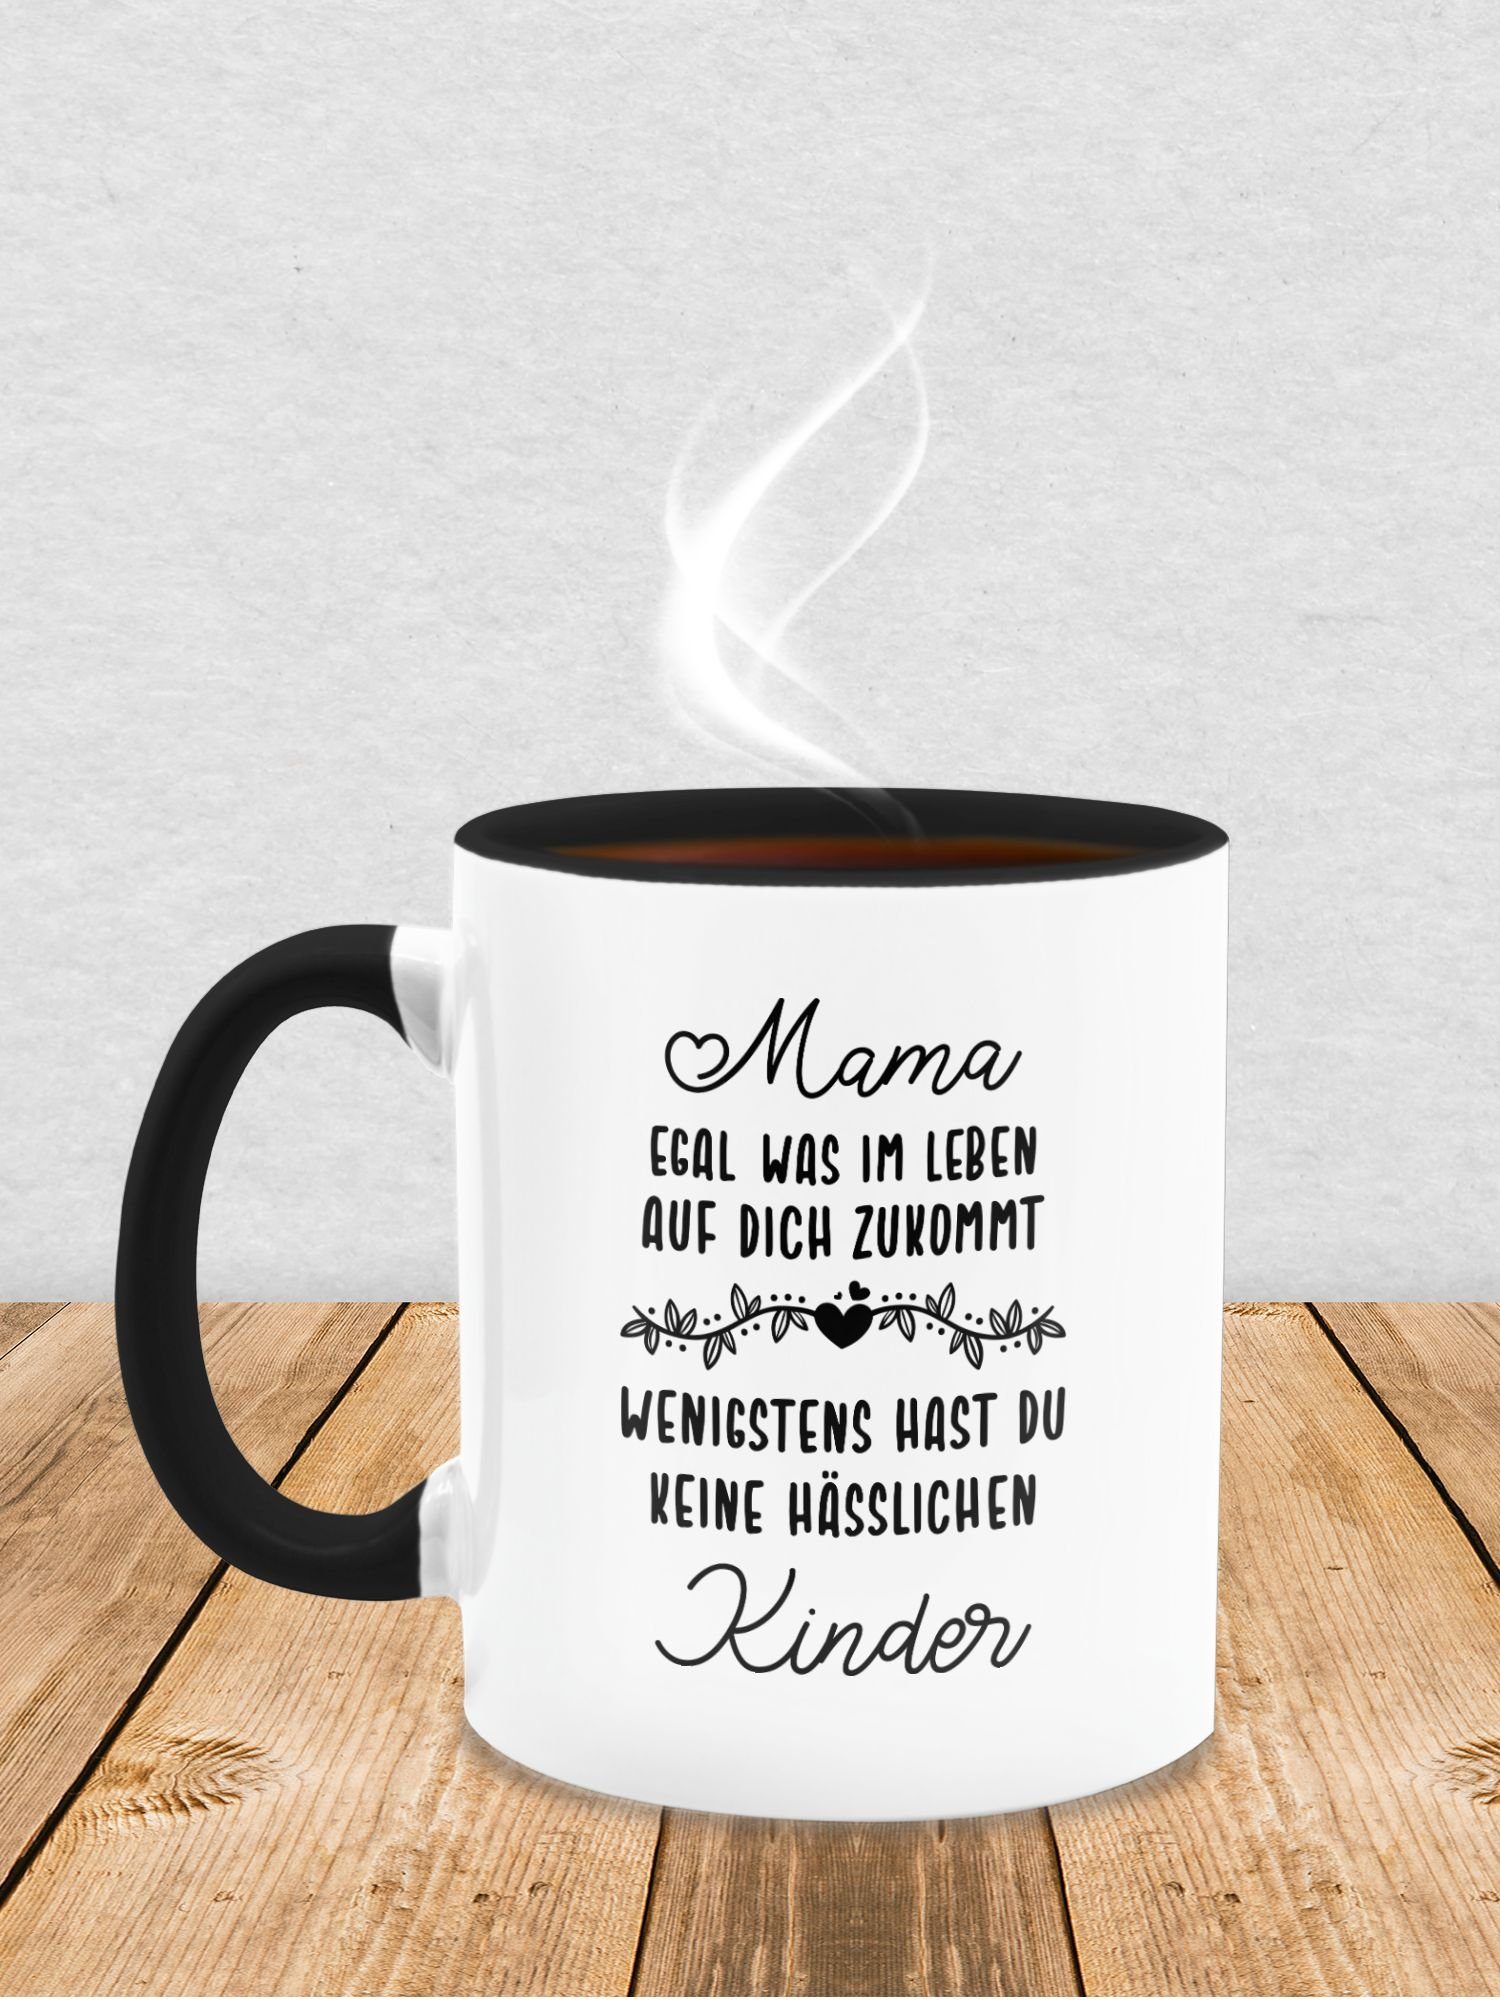 Tasse zukommt Schwarz wenigstens Leben egal hässl, Keramik, Dich hast Shirtracer im Muttertagsgeschenk auf du 1 was Mama keine